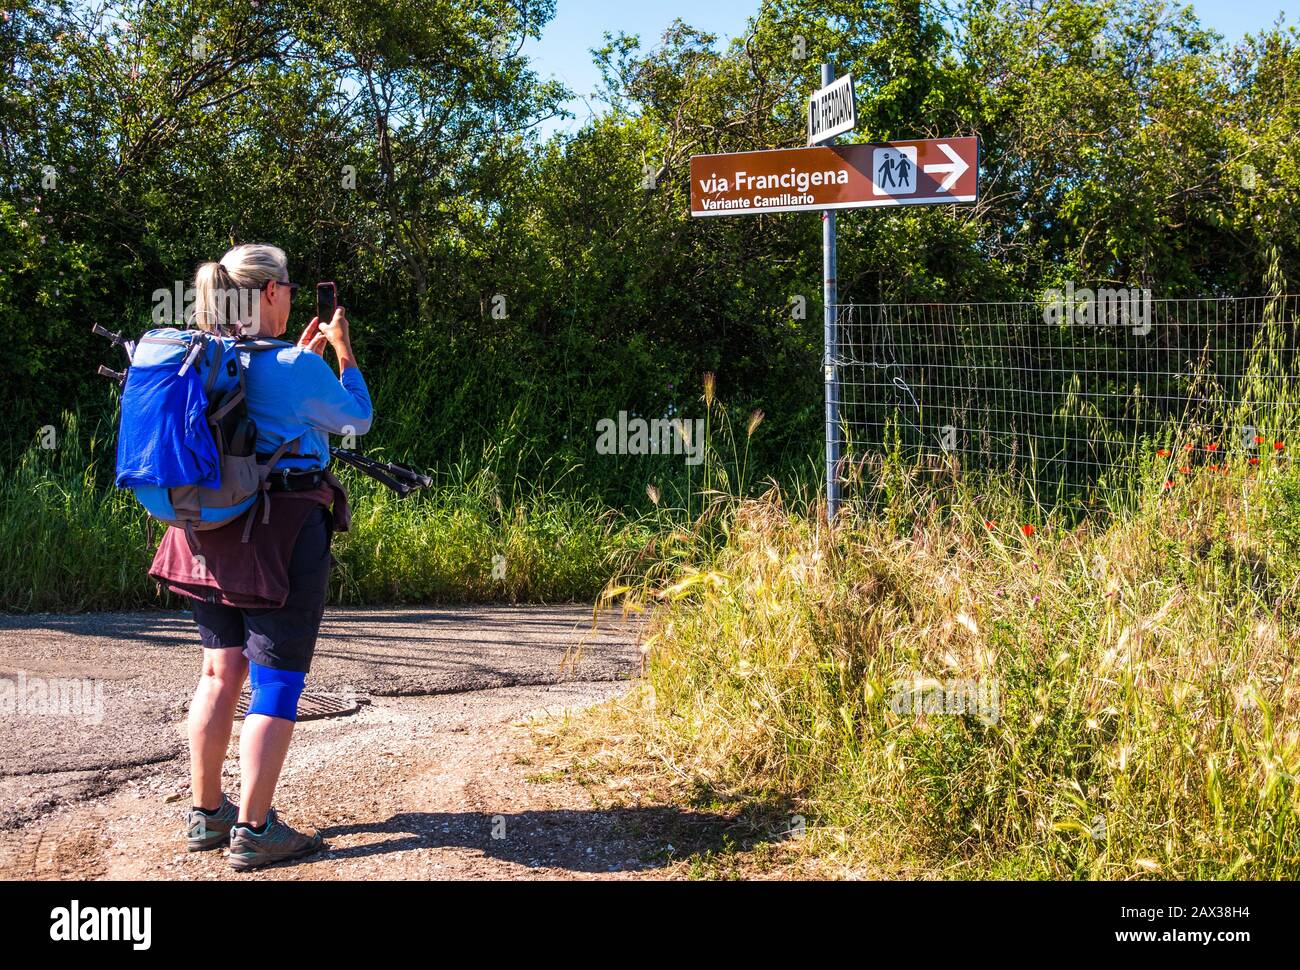 Femme randonneur pèlerin photographiant le chemin du pèlerin ancien Via le panneau de direction de Francigena, Lazio, Italie Banque D'Images